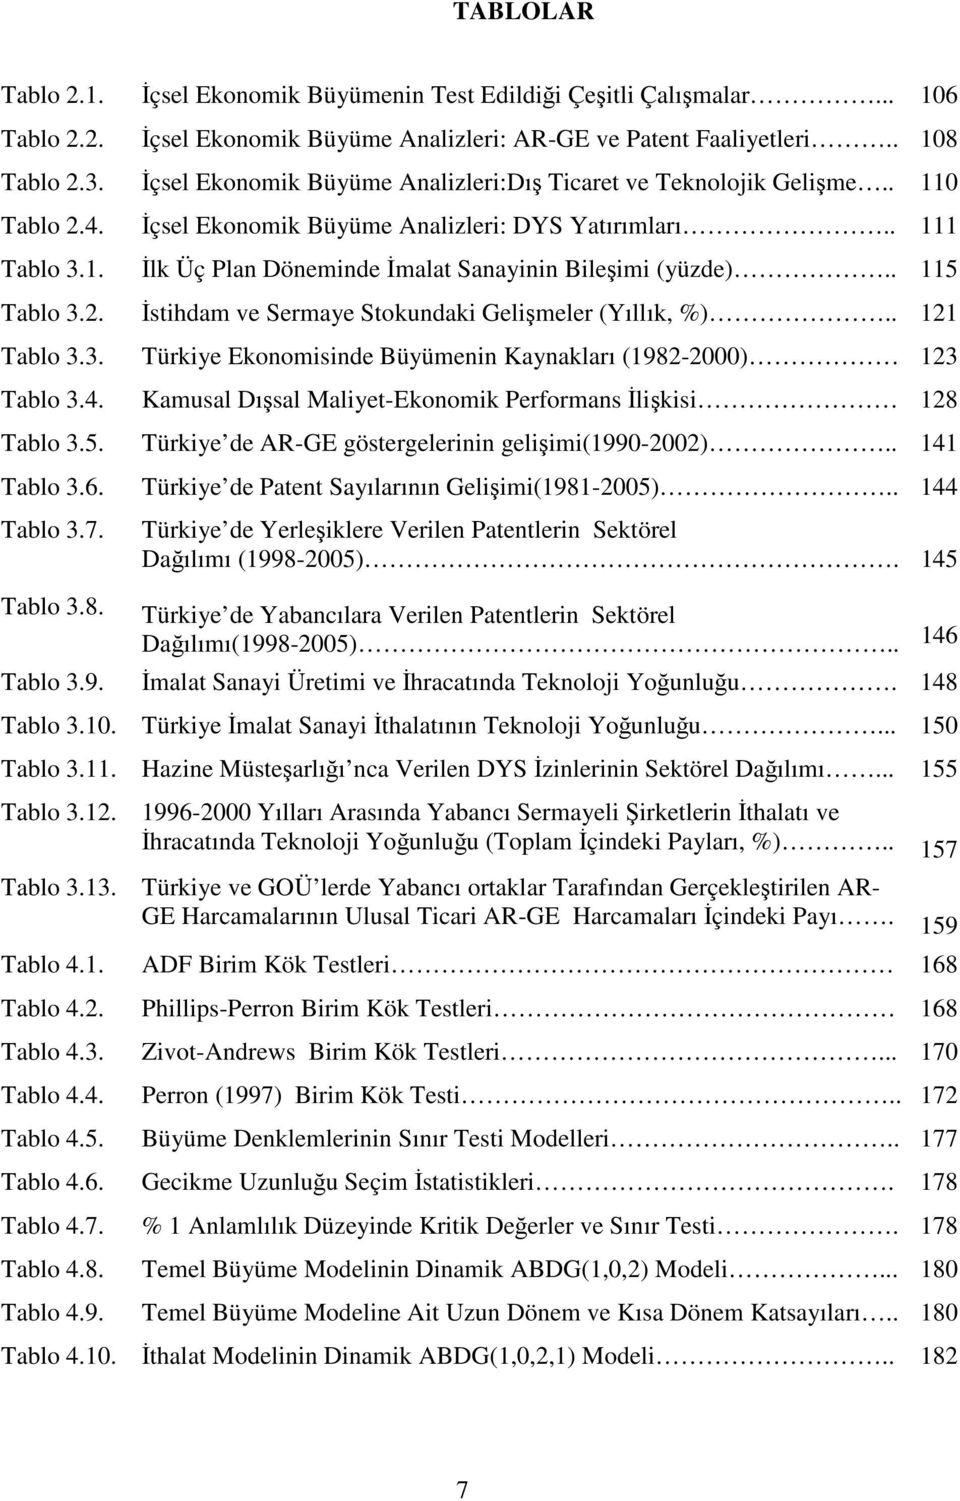 . 115 Tablo 3.2. İsihdam ve Sermaye Sokundaki Gelişmeler (Yıllık, %).. 121 Tablo 3.3. Türkiye Ekonomisinde Büyümenin Kaynakları (1982-2000) 123 Tablo 3.4.